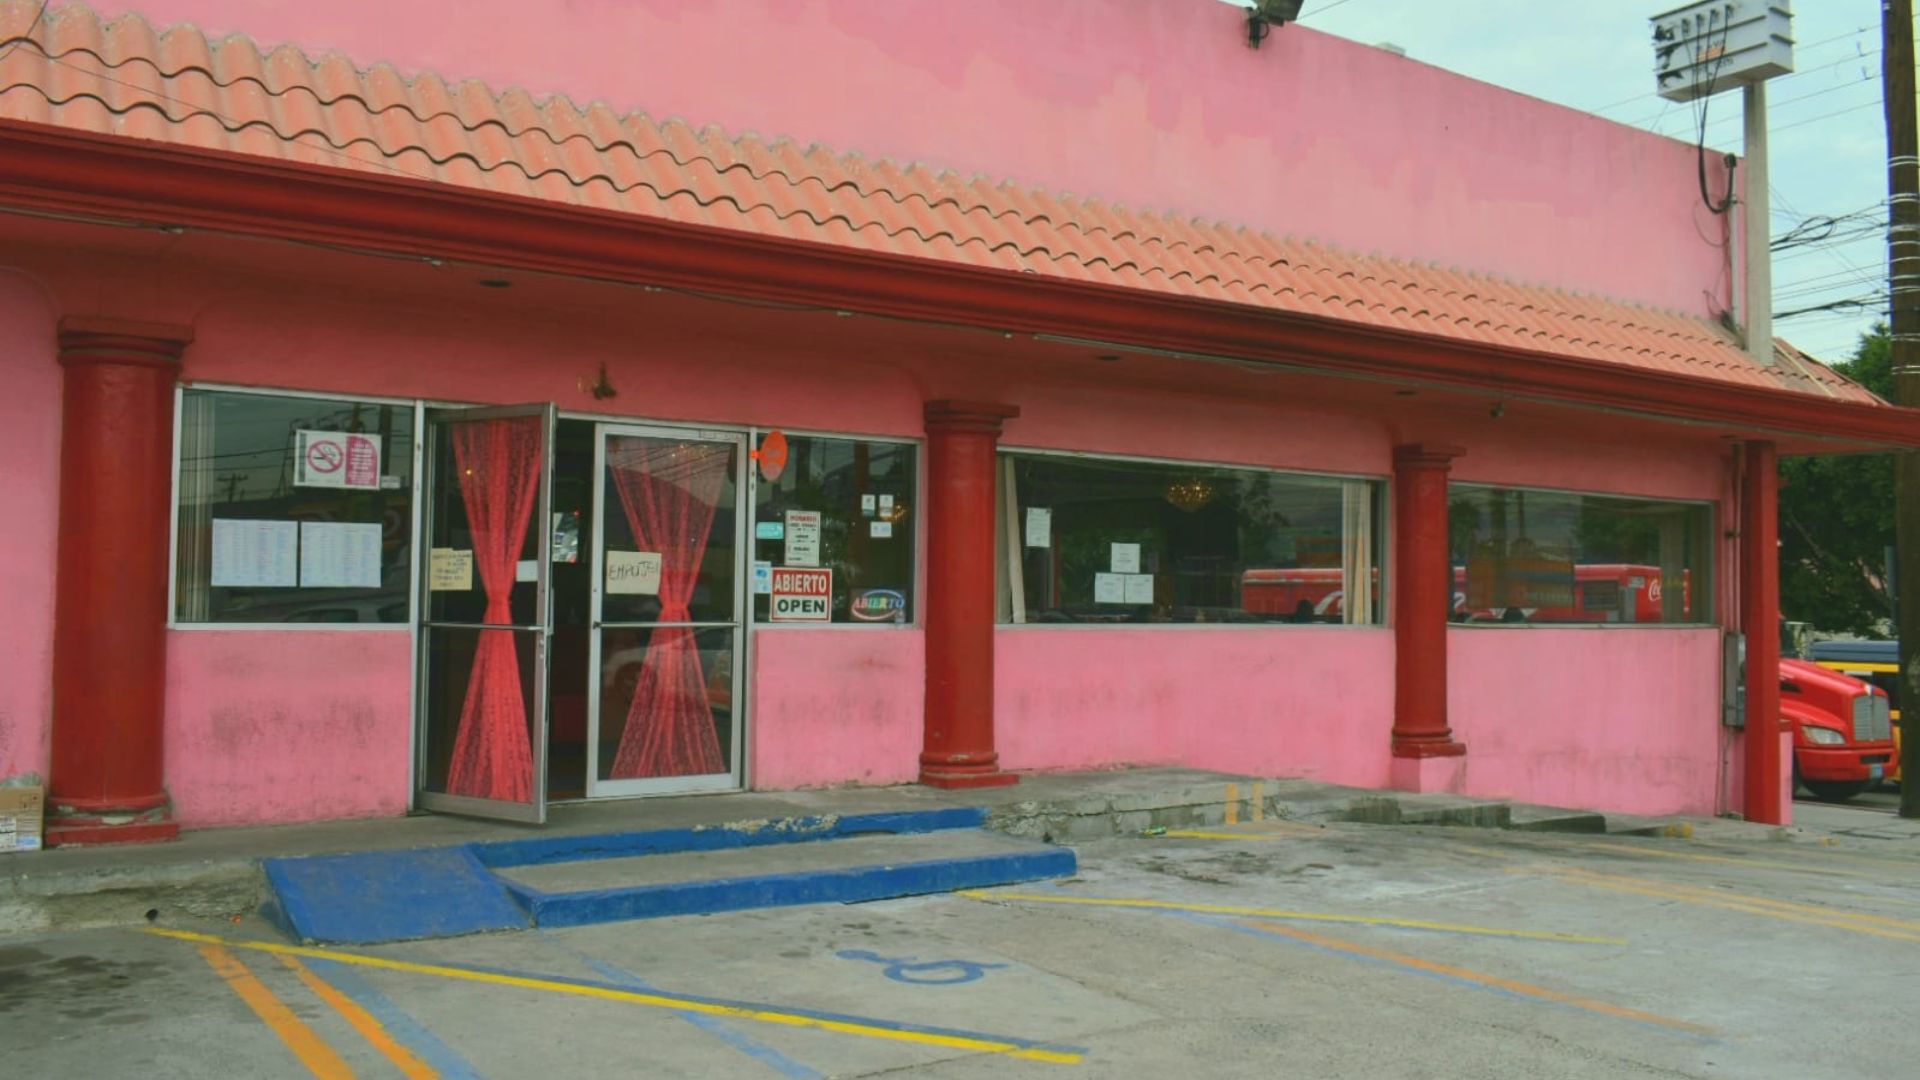 Tráfico de totoaba, atentados contra restaurantes chinos e impunidad en Tijuana